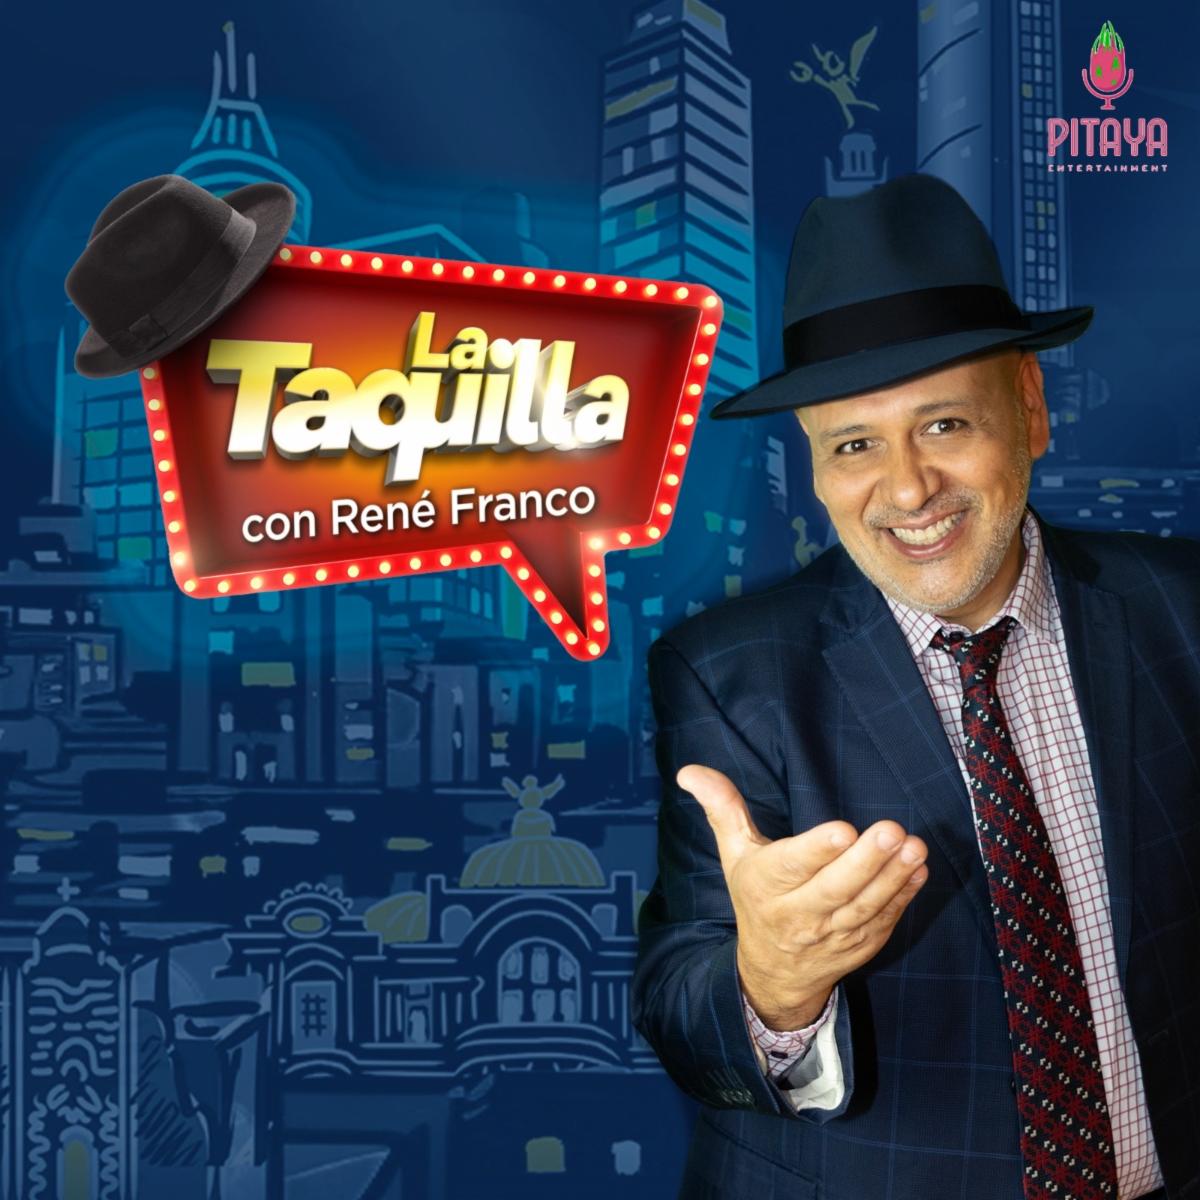 La Taquilla con René Franco, el emblemático programa de noticias de entretenimiento, regresa en versión podcast a través de Pitaya Entertainment